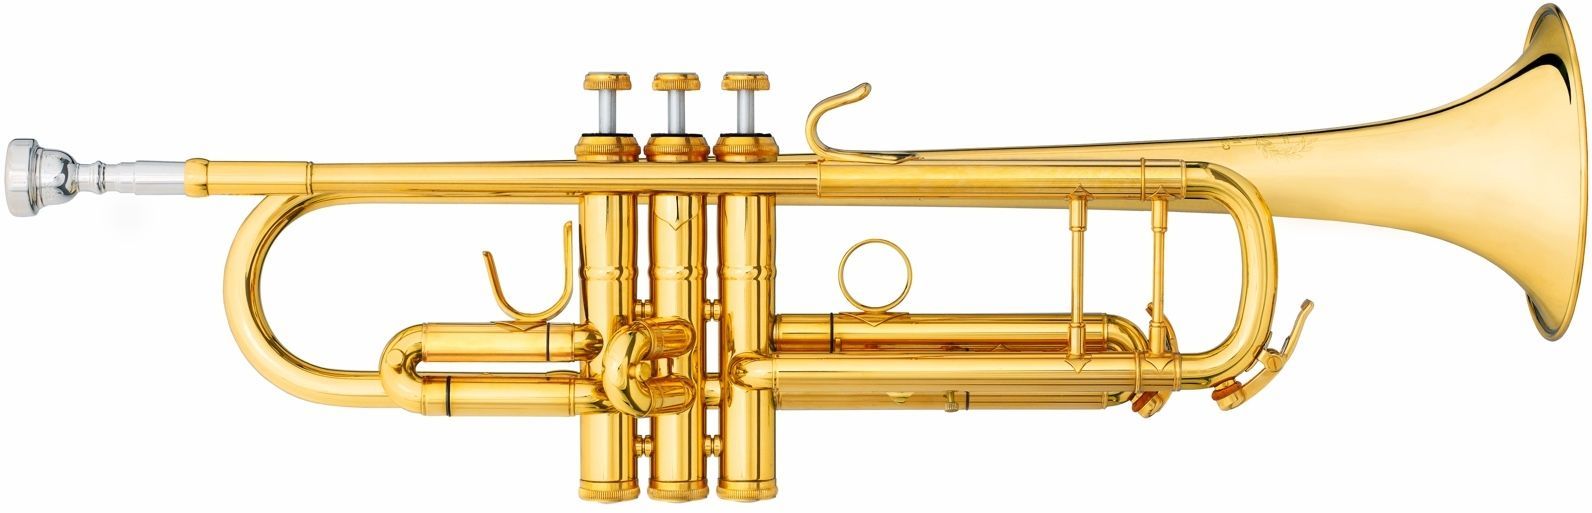 B S 3137 2 GLB L Challenger II B Trompete, Bohrung 11,66mm, Etui Pflegeset  - Onlineshop Musikhaus Markstein